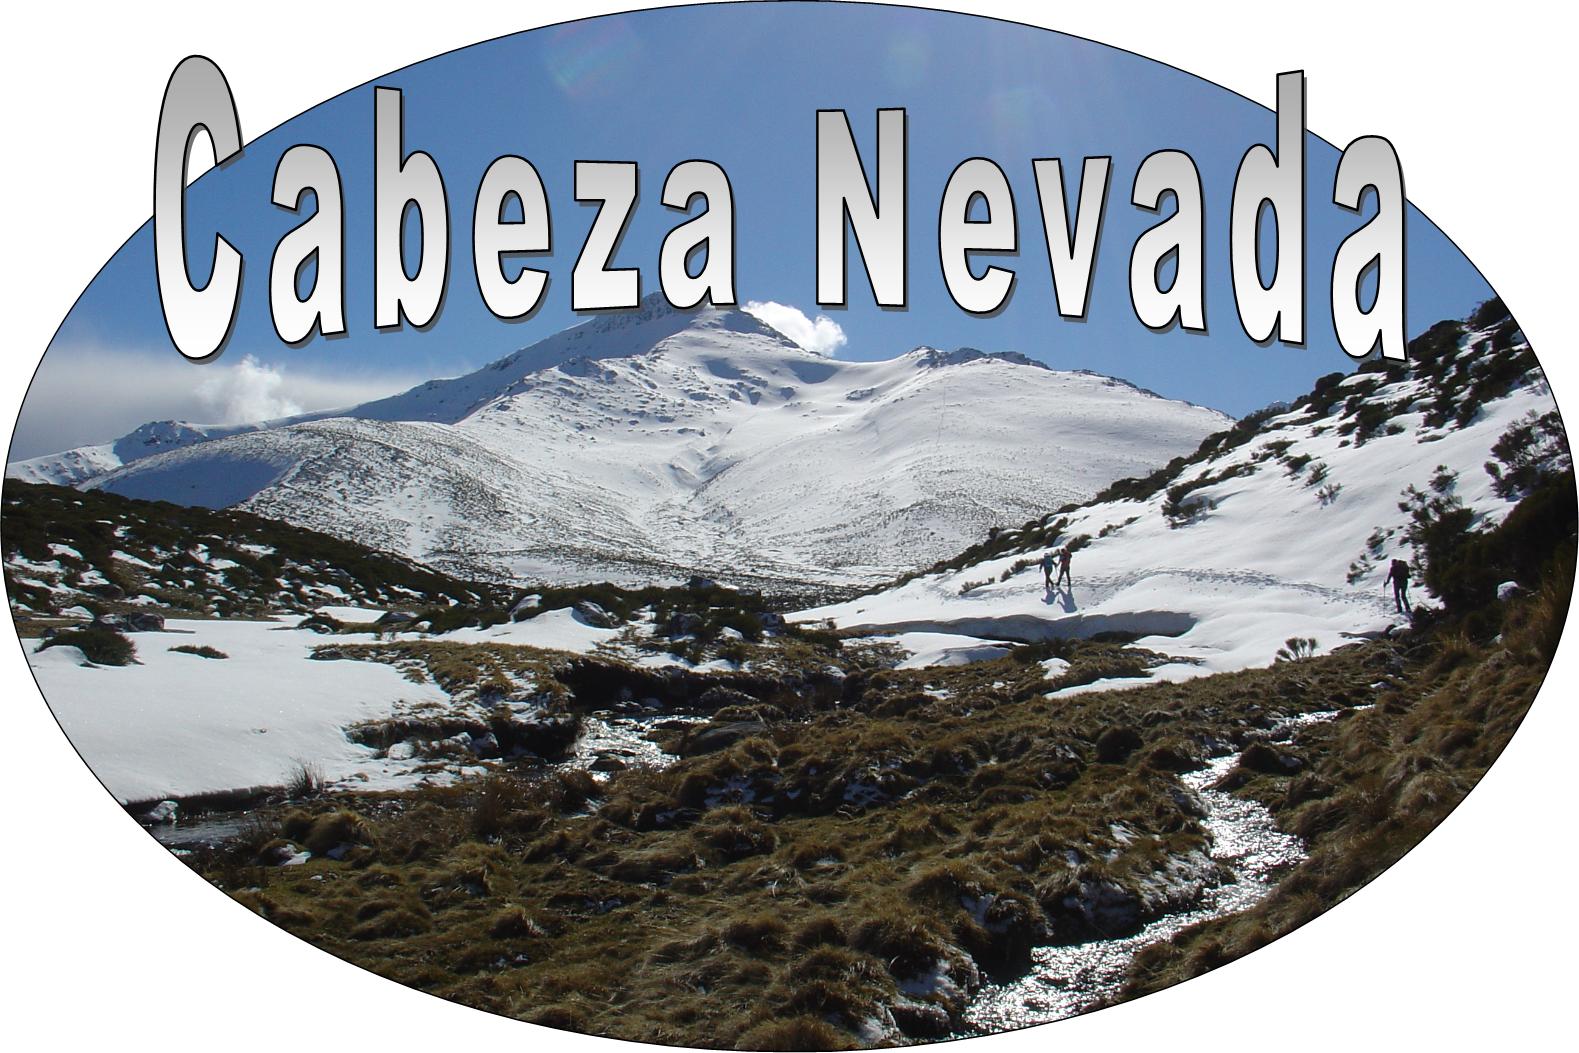 Cabeza Nevada